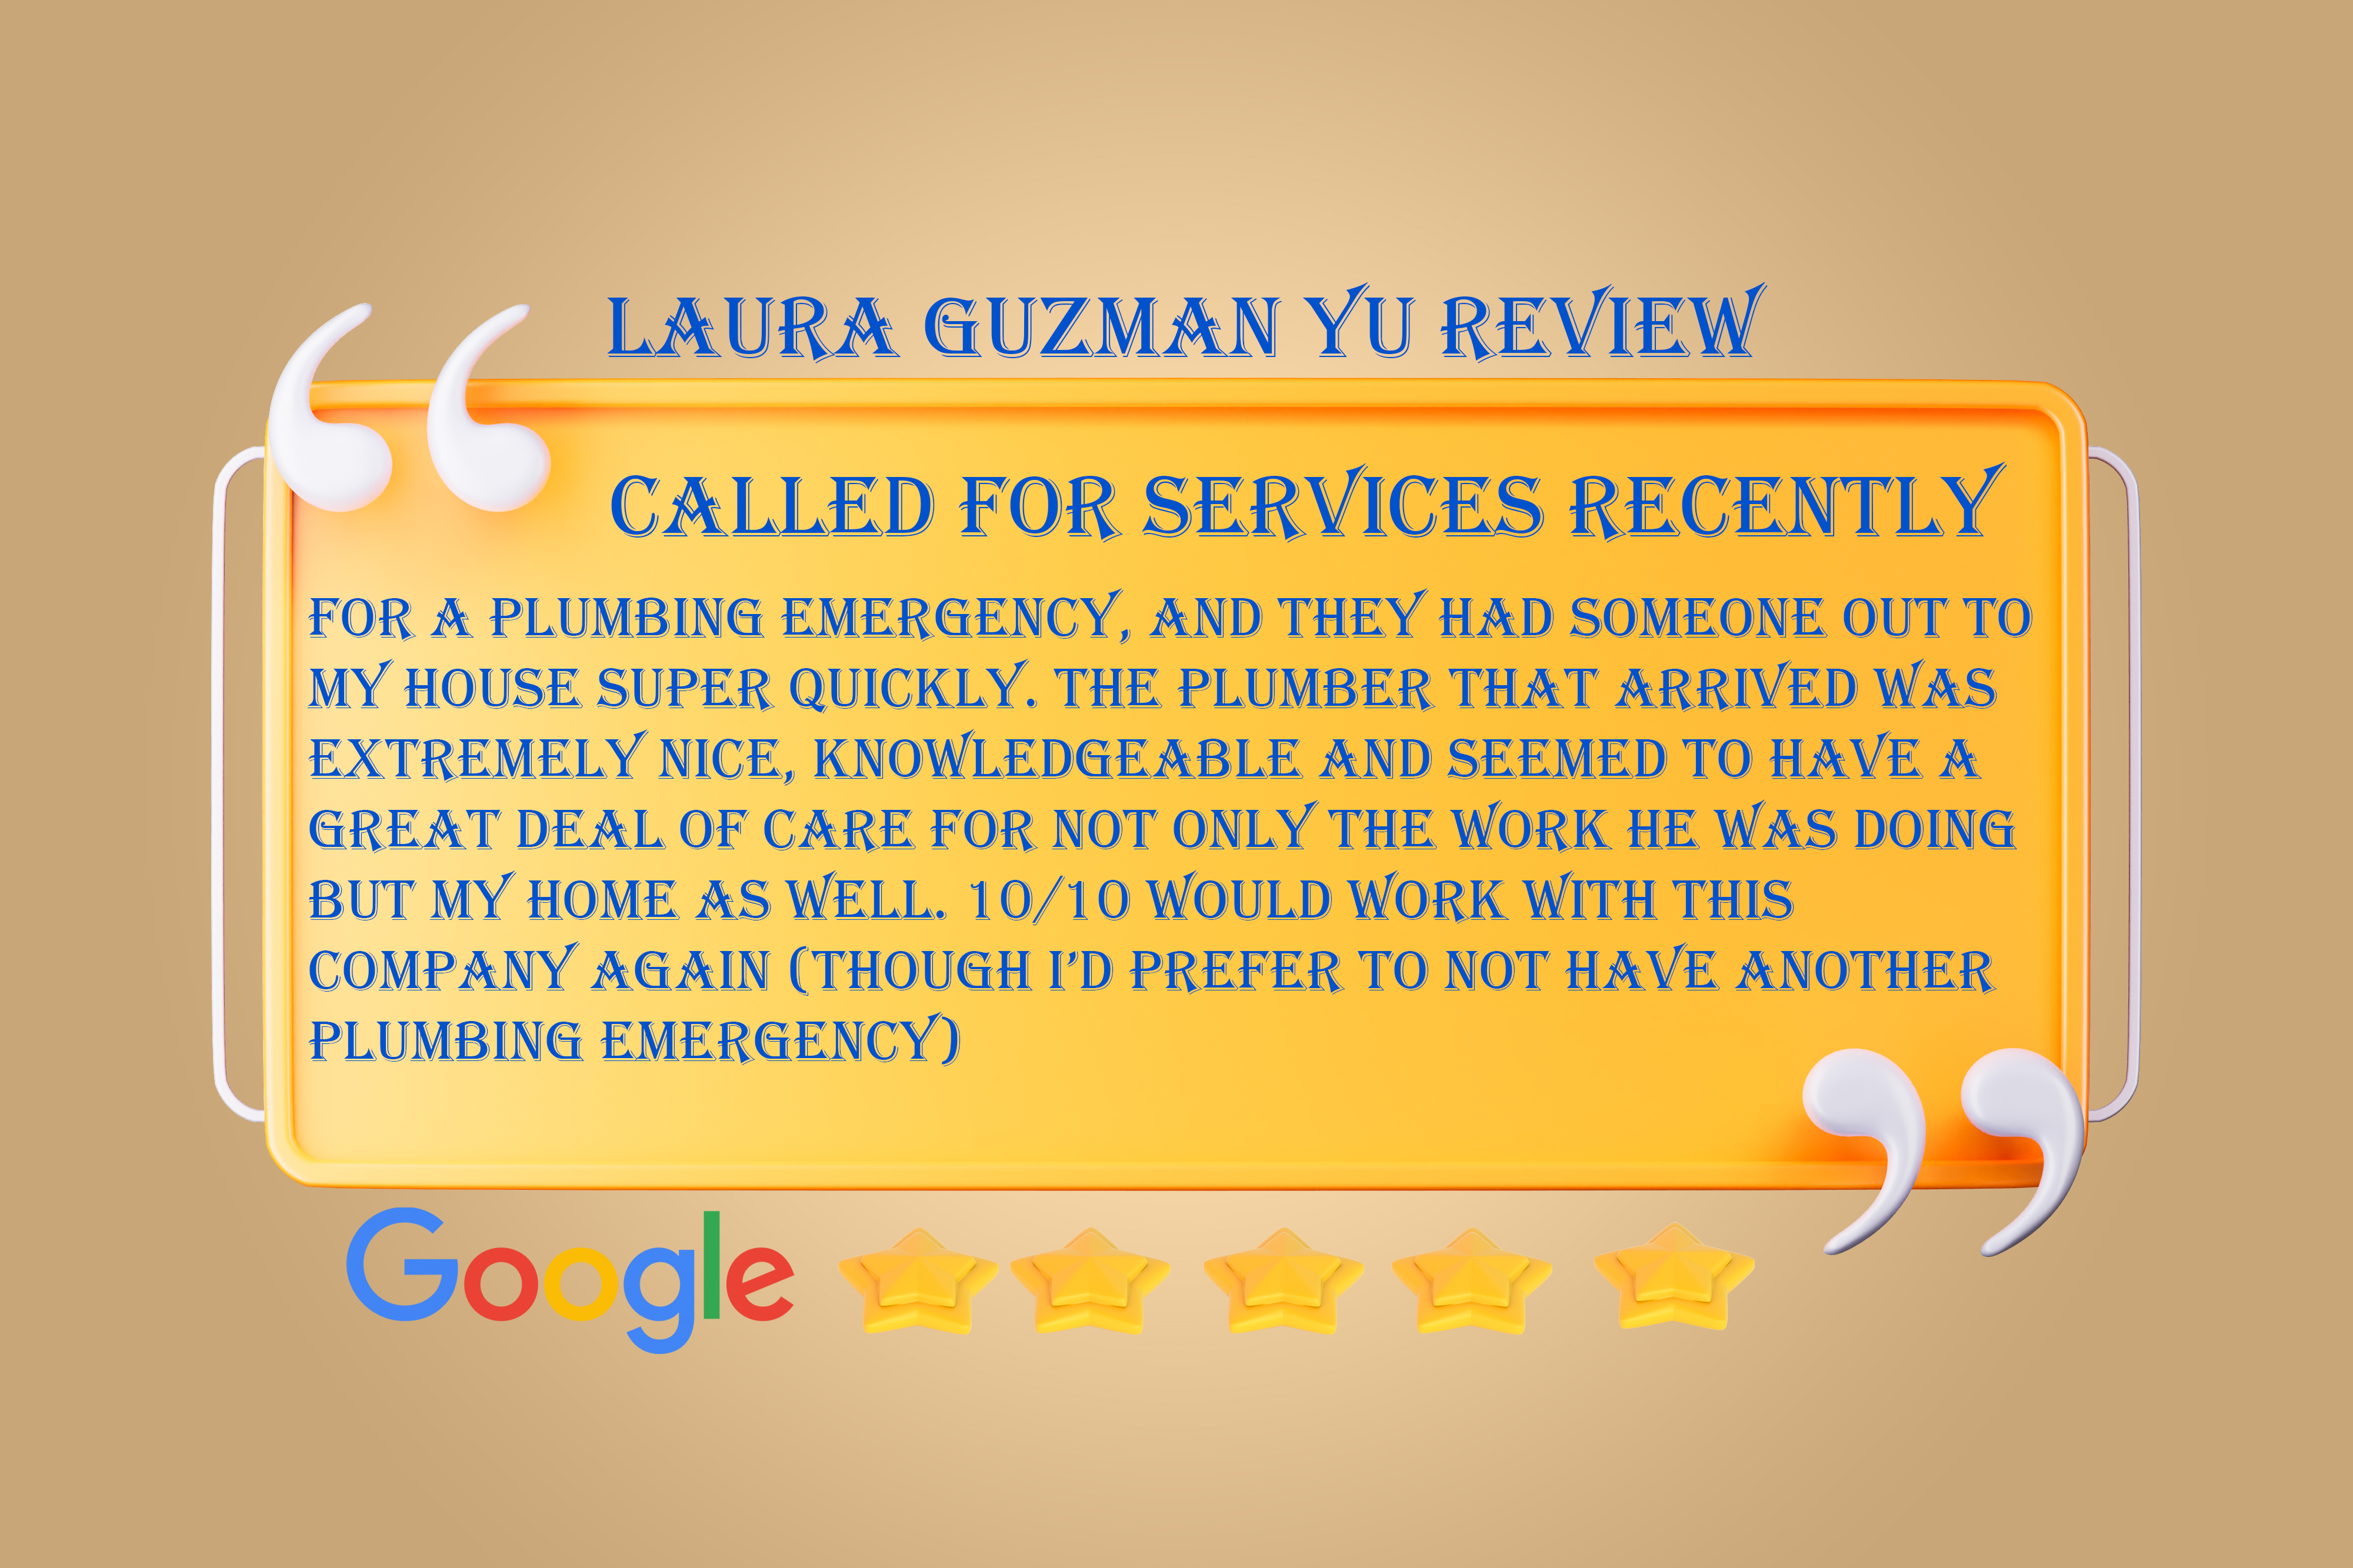 24-hours-Plumbing-google-review-Laura-Guzman-Yu